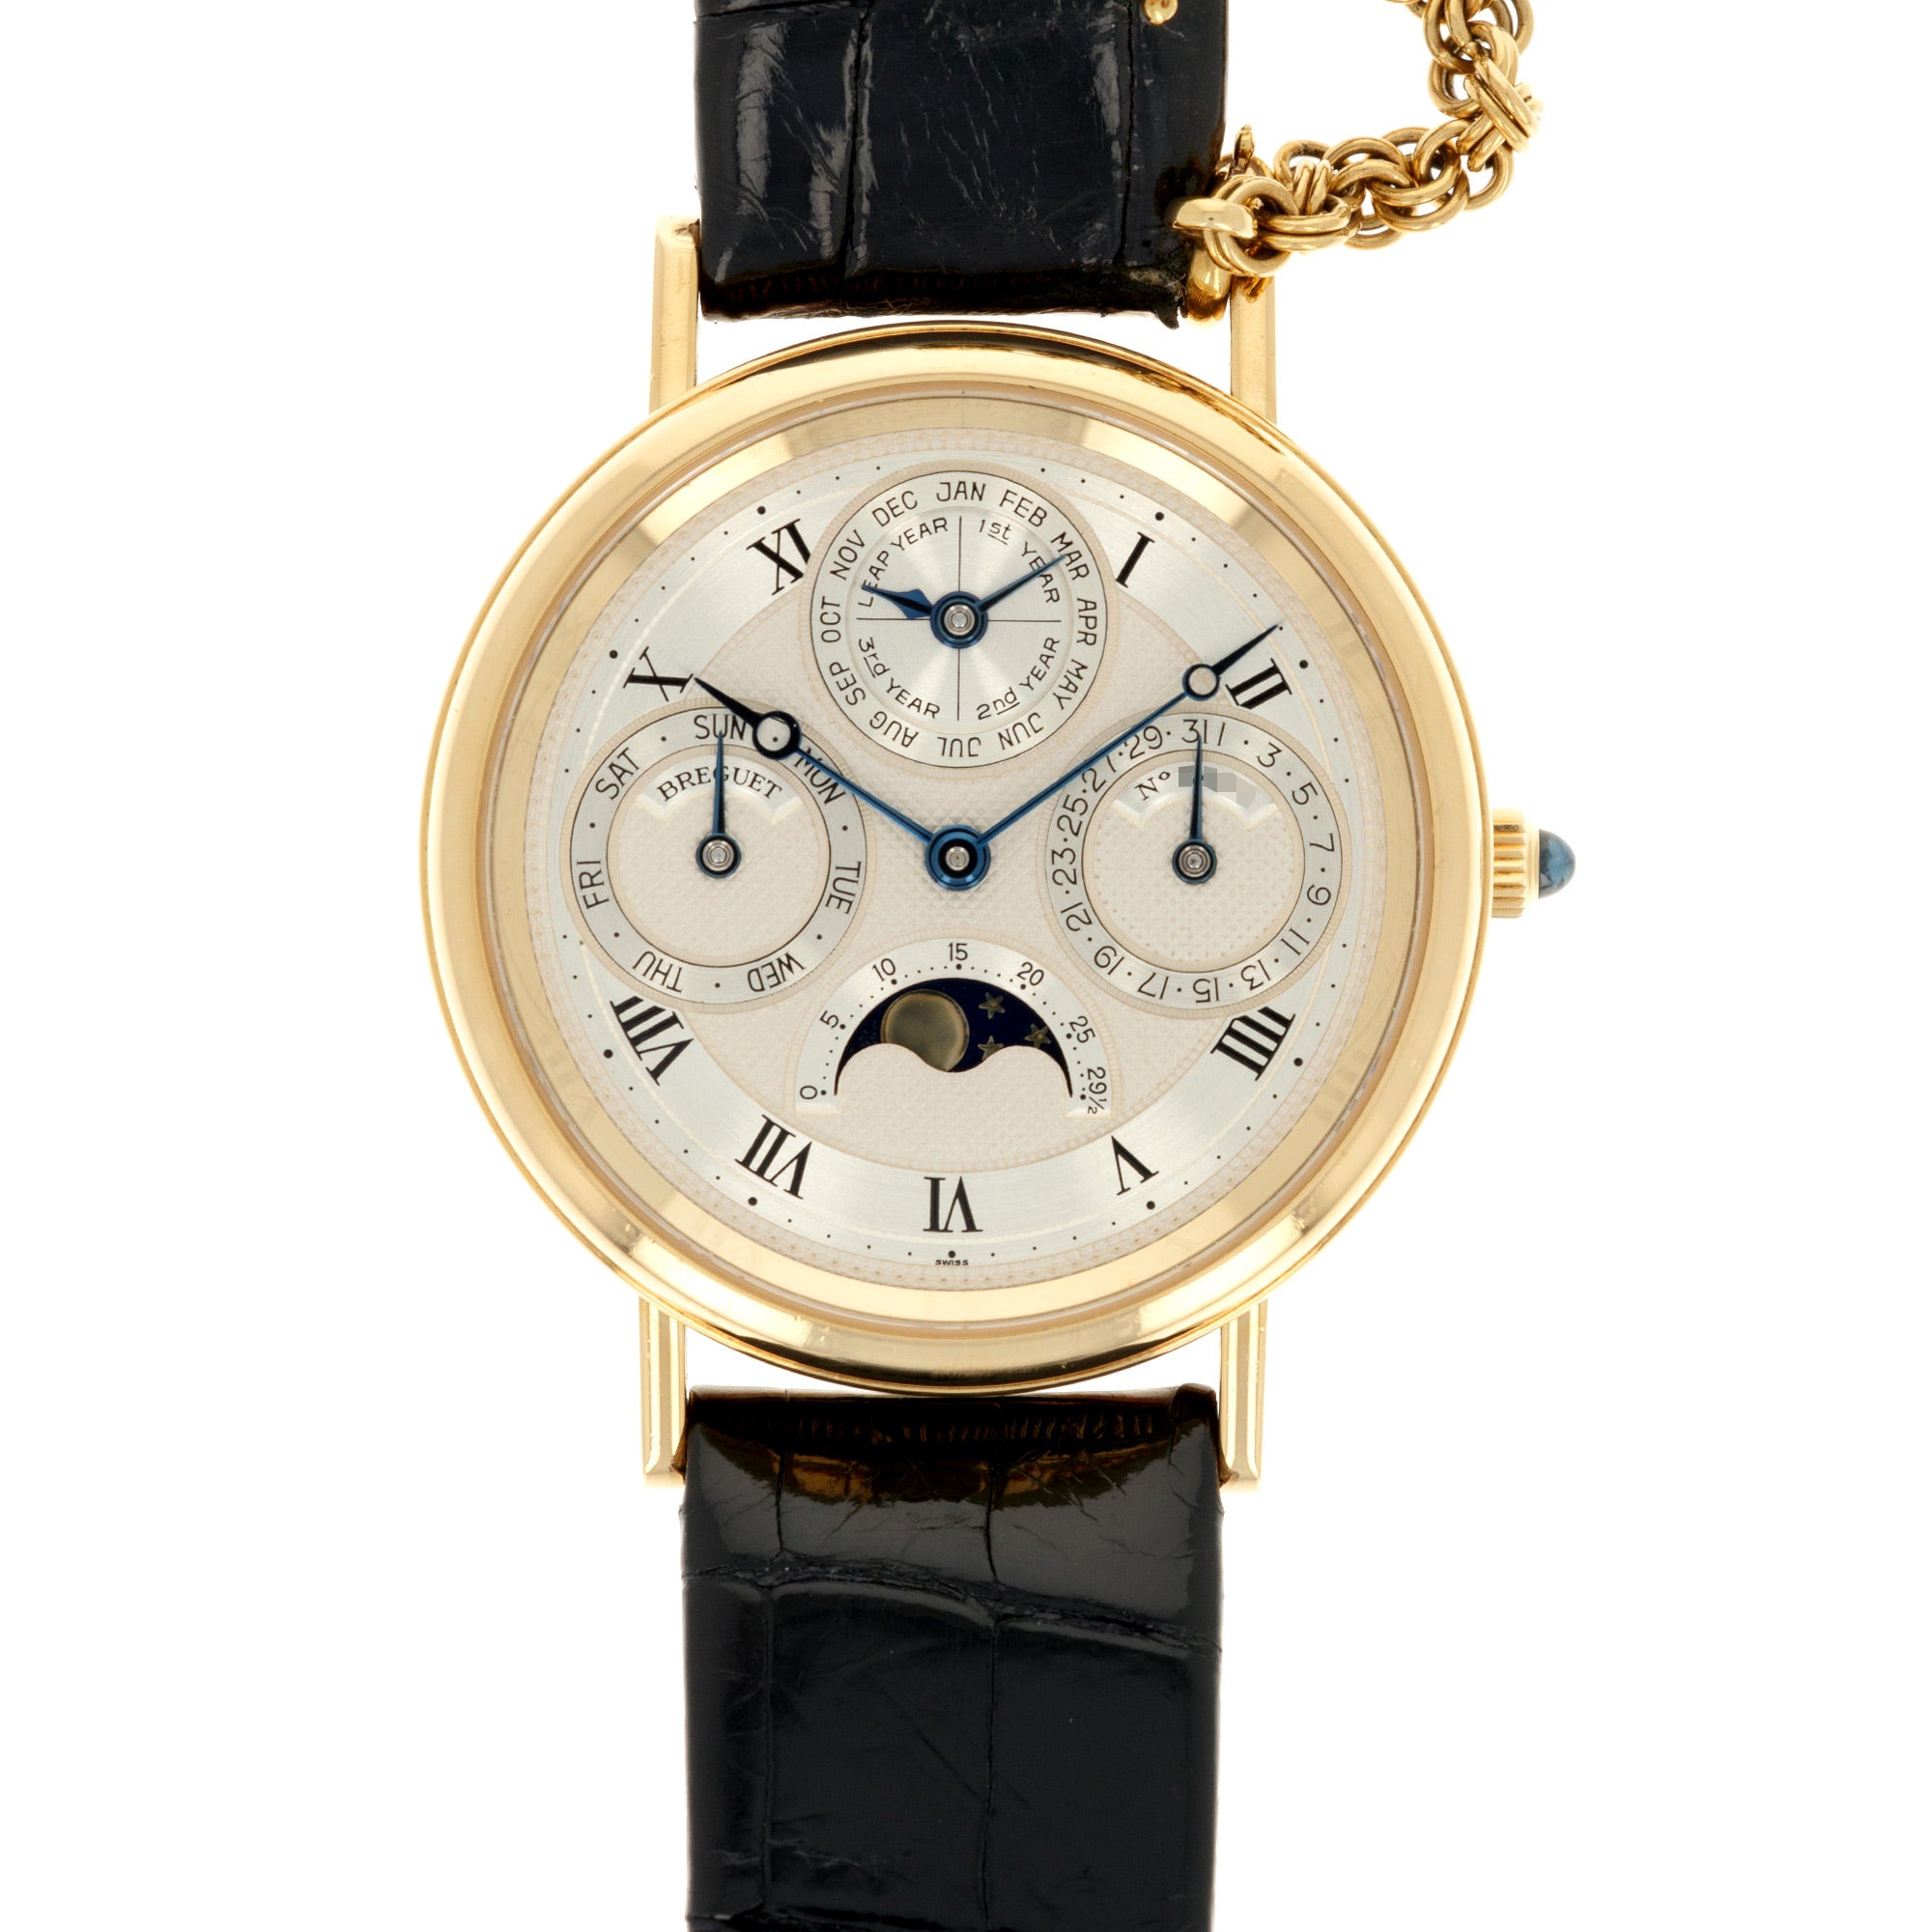 Breguet - Breguet Yellow Gold Classique Perpetual Calendar Watch Ref. 3050 - The Keystone Watches